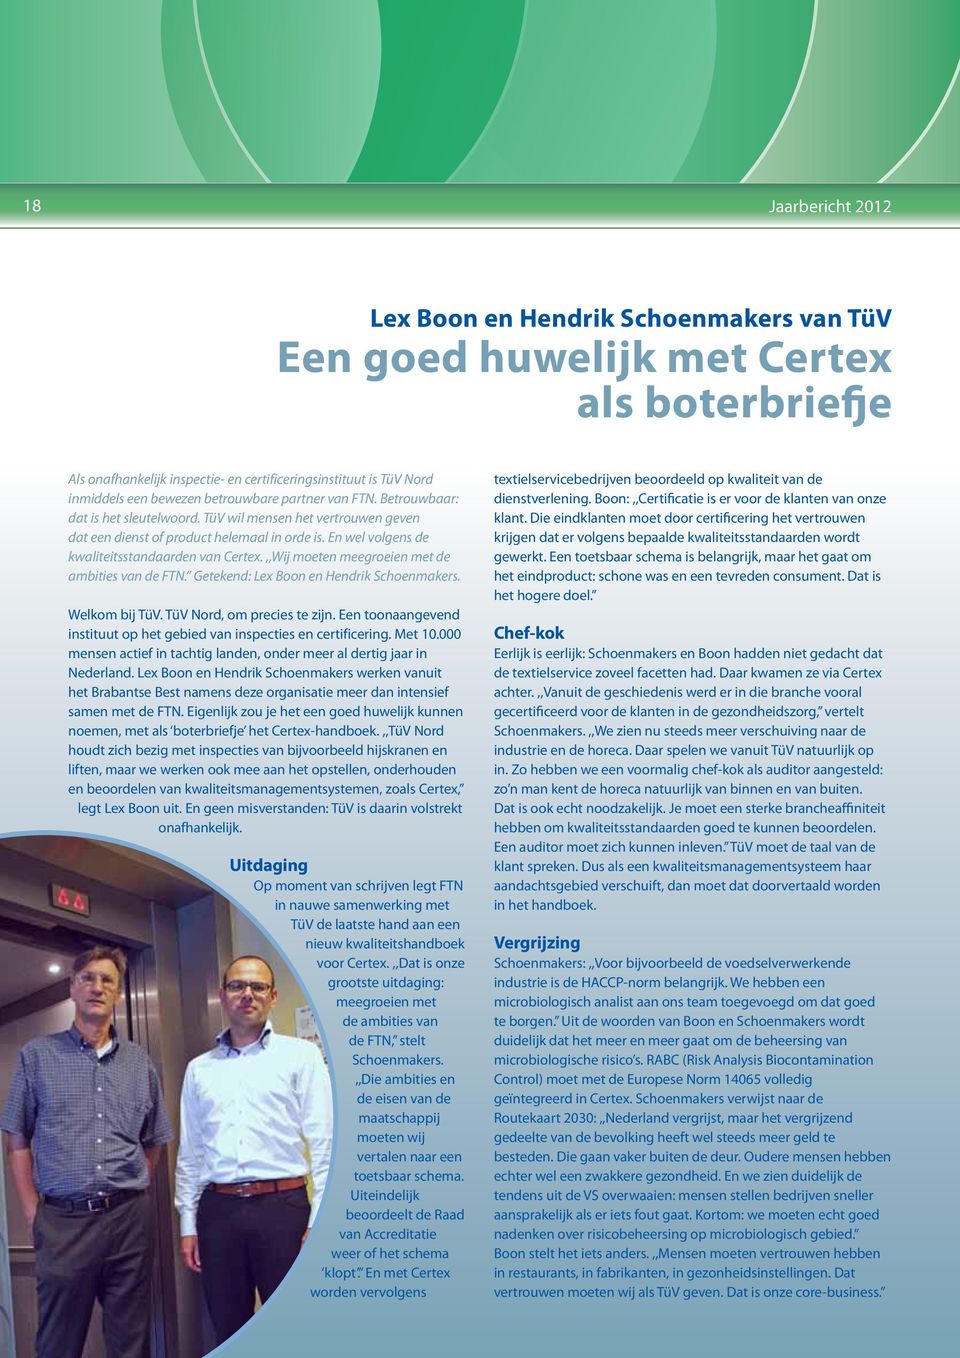 En wel volgens de kwaliteitsstandaarden van Certex.,,Wij moeten meegroeien met de ambities van de FTN. Getekend: Lex Boon en Hendrik Schoenmakers. Welkom bij TüV. TüV Nord, om precies te zijn.